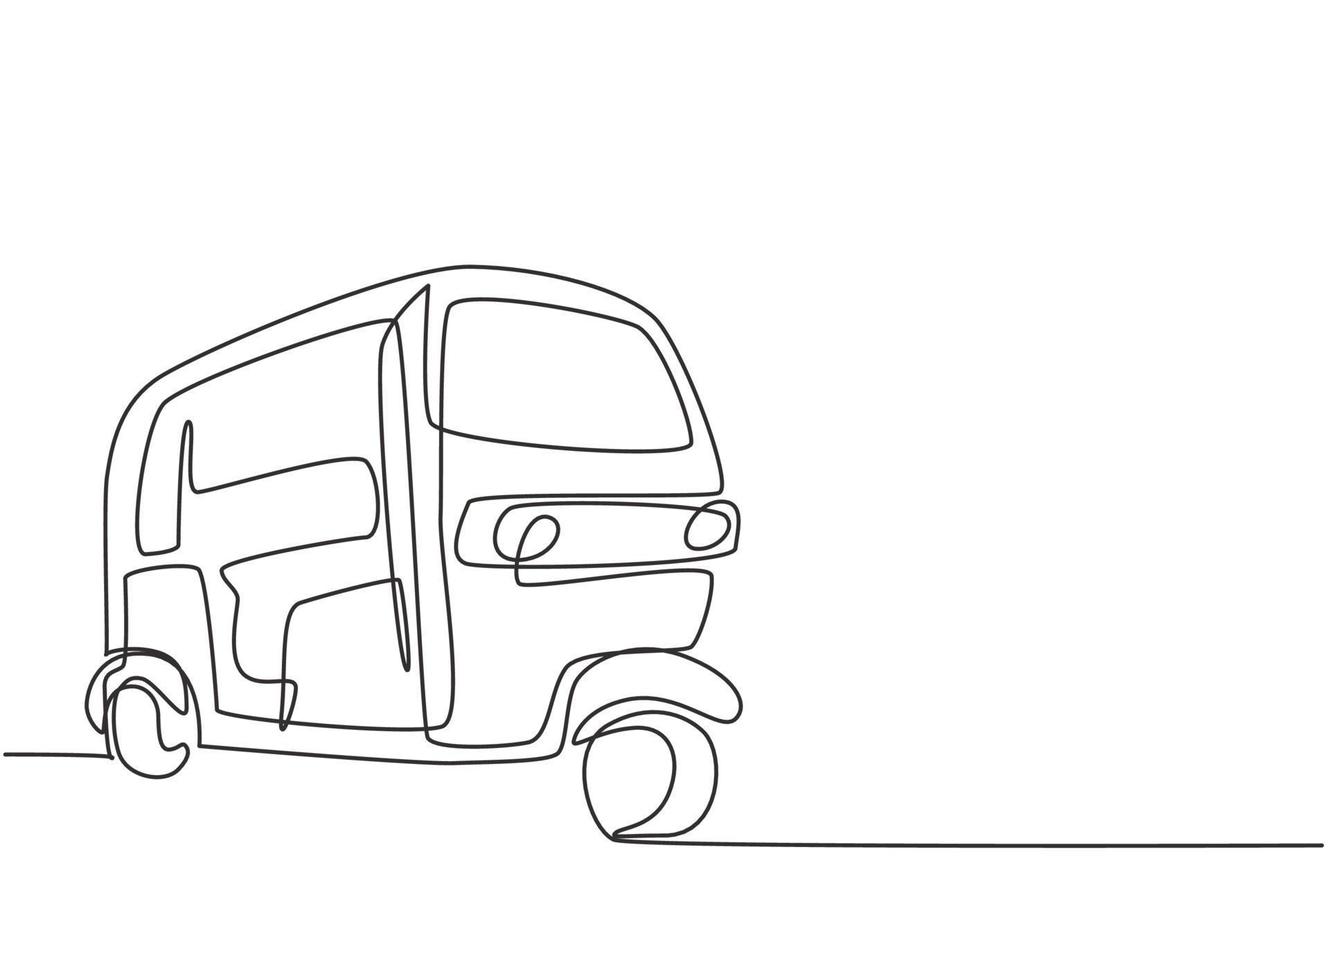 Rickshaw de dibujo de línea continua única transporte tradicional en la India que sirve a pasajeros locales y turistas extranjeros que están de vacaciones. Ilustración de vector de diseño gráfico de dibujo de una línea.